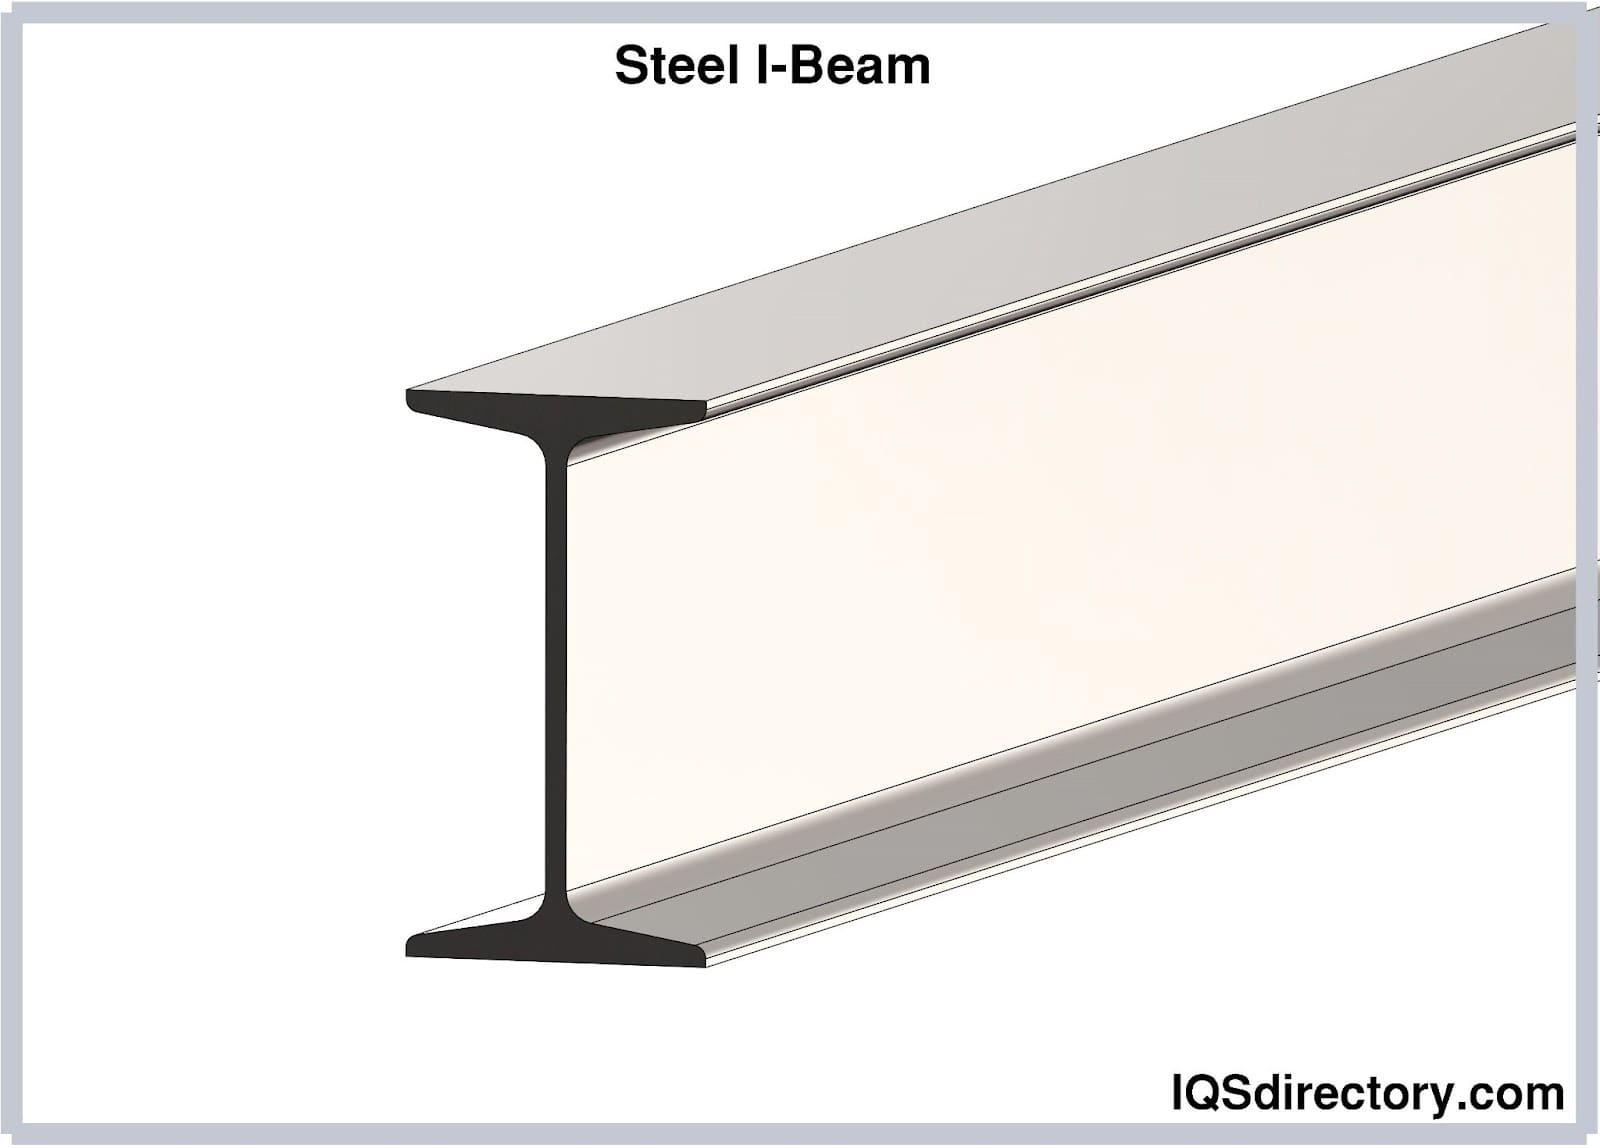 Steel I-Beam